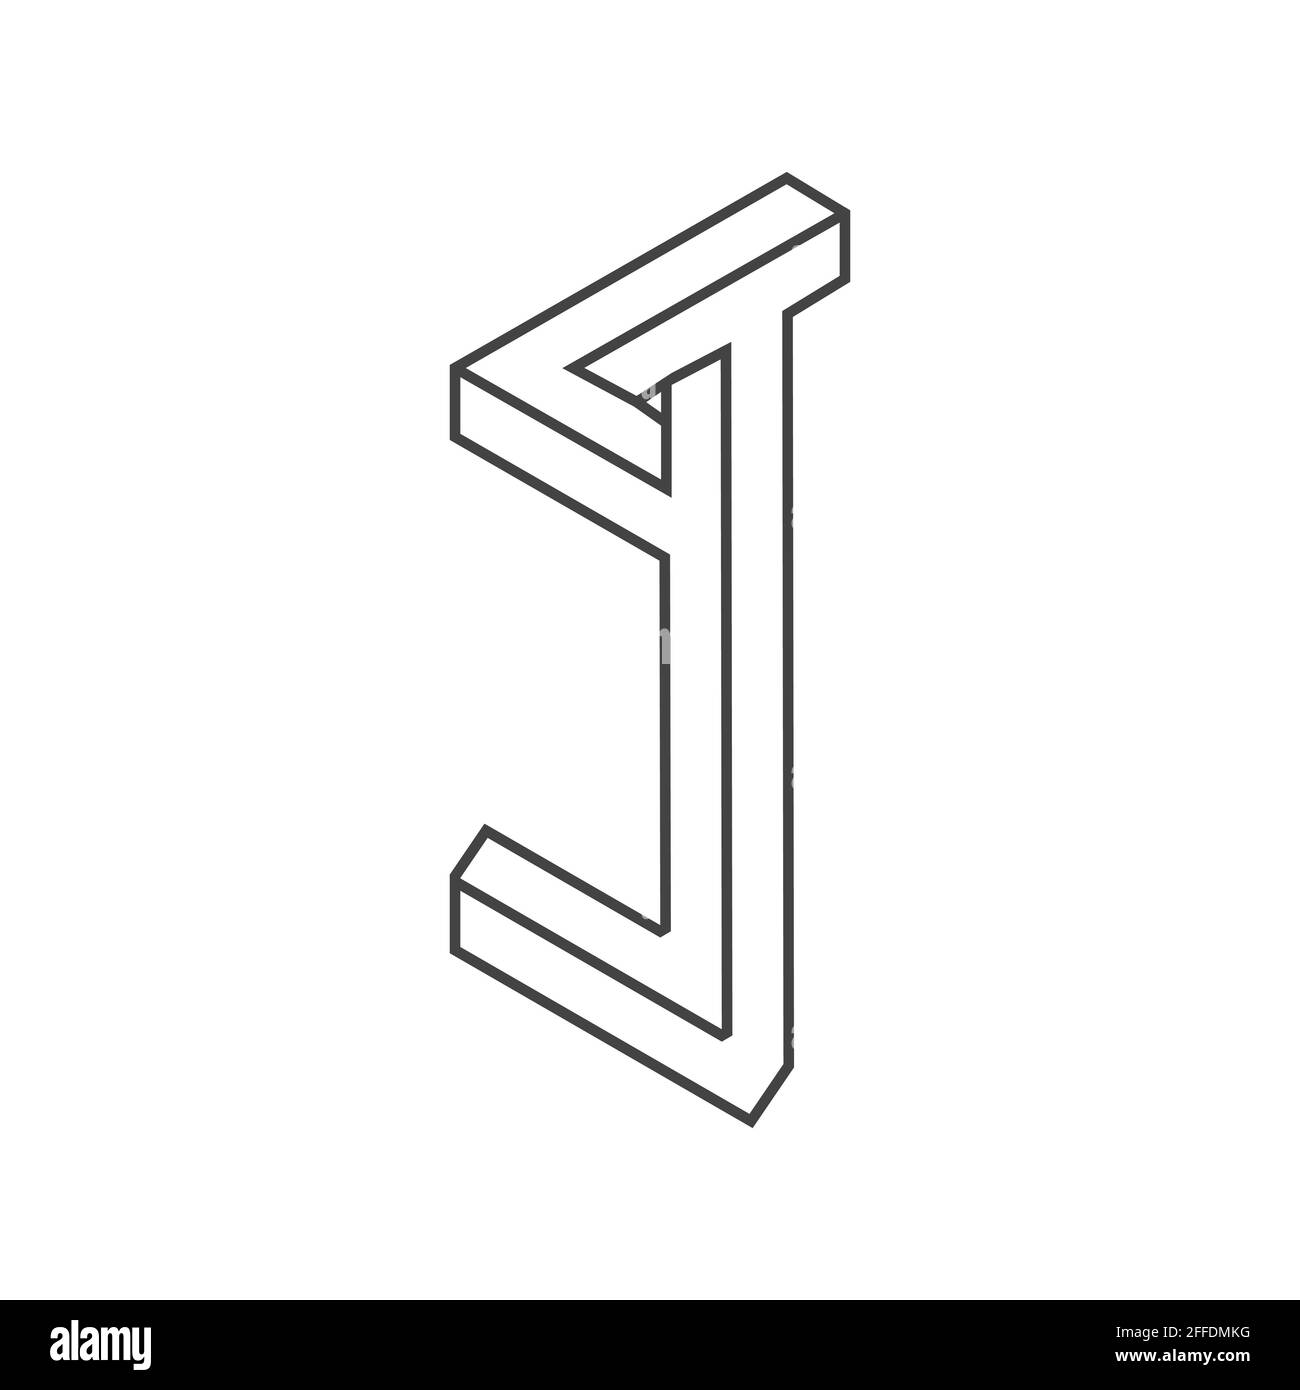 Design der Vorlage für das ursprüngliche logo mit tj-Buchstaben. jt-Logo mit verknüpftem Buchstaben. Stock Vektor